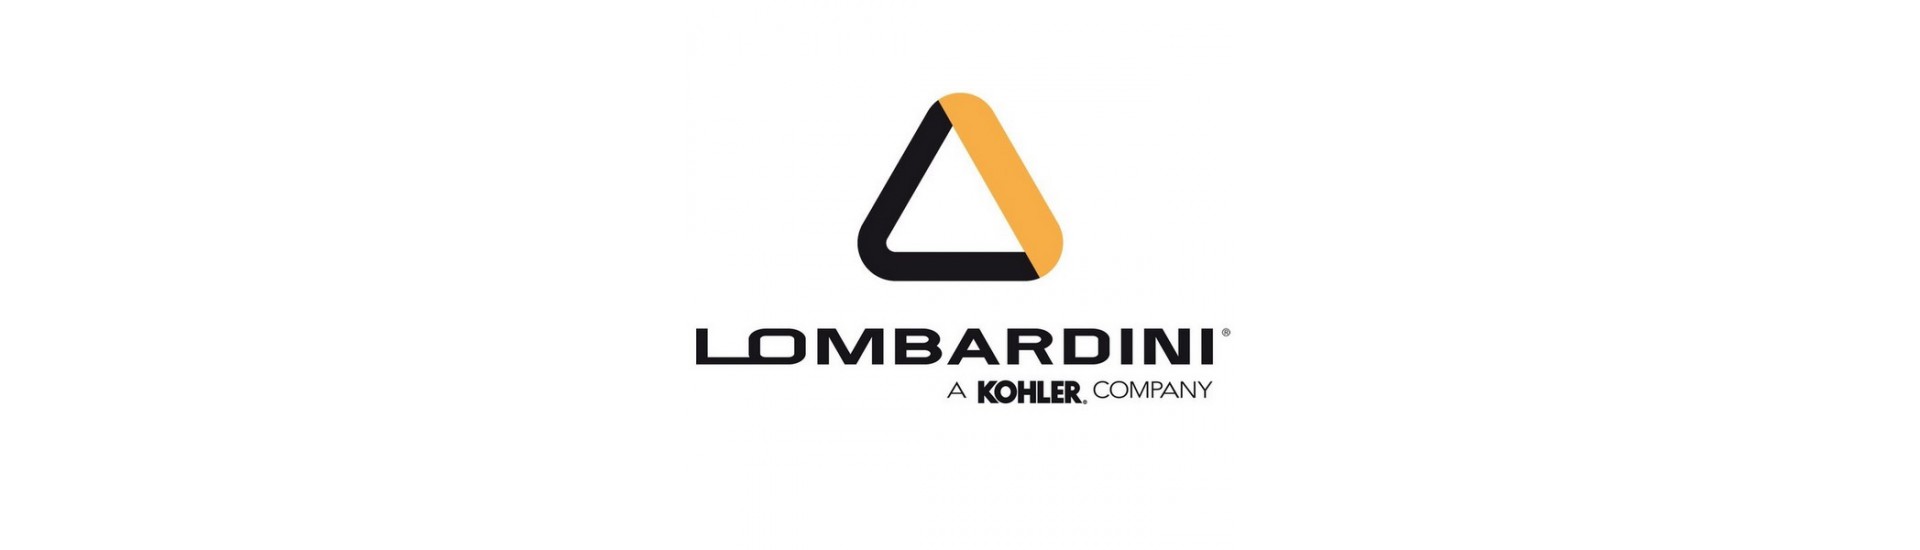 Filtres à huile Lombardini au meilleur prix pour voiture sans permis